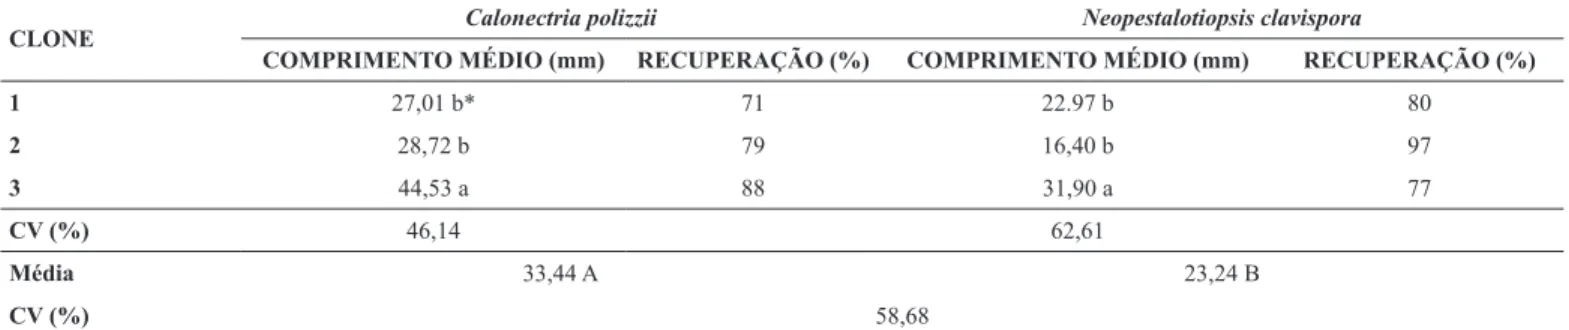 Tabela 2. Comprimento médio (mm) do apodrecimento das miniestacas e recuperação (%) após sete dias da inoculação de Calonectria polizzii  e Neopestalotiopsis clavispora